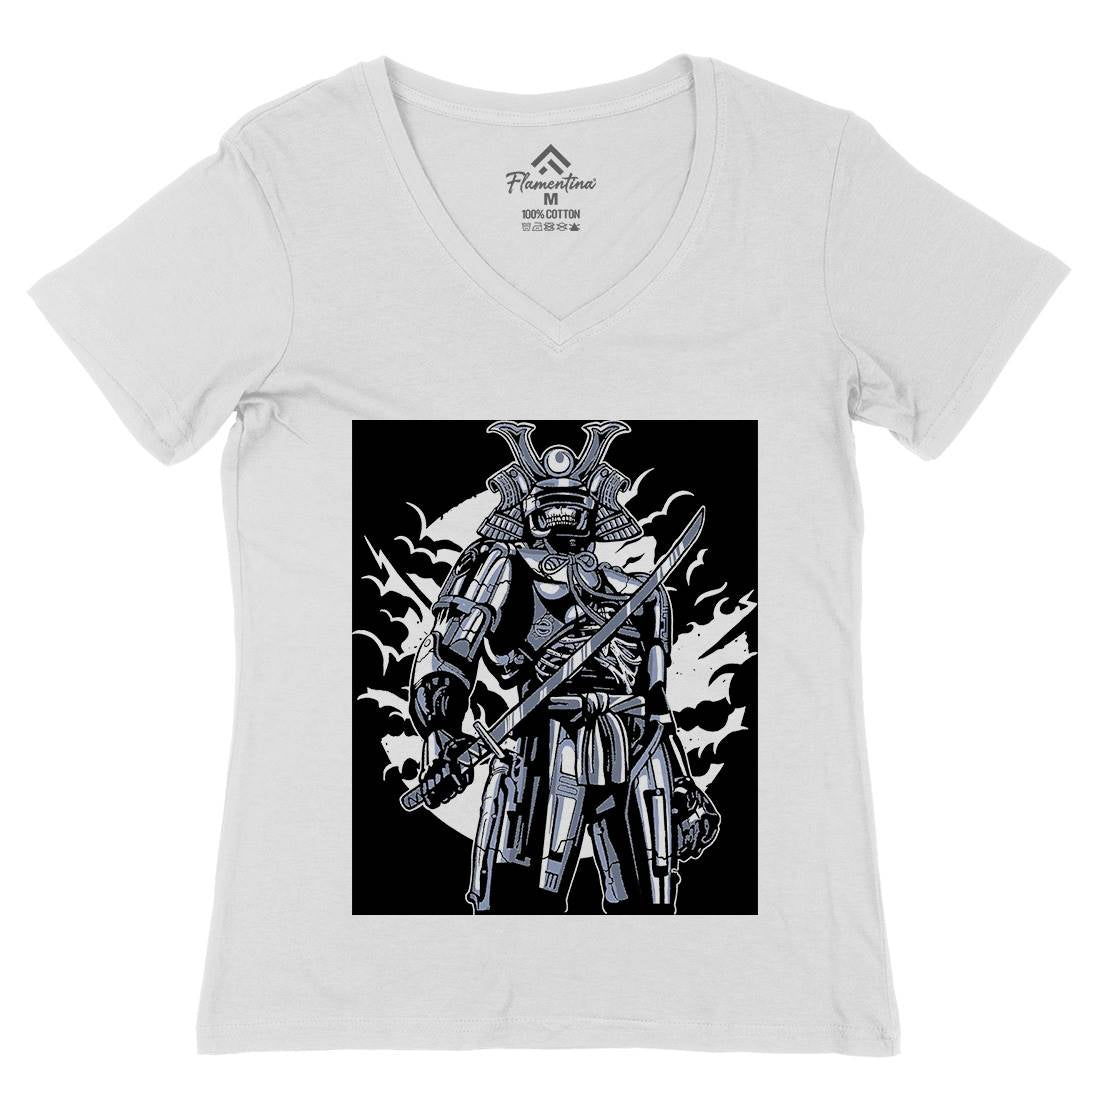 Samurai Robot Womens Organic V-Neck T-Shirt Warriors A569